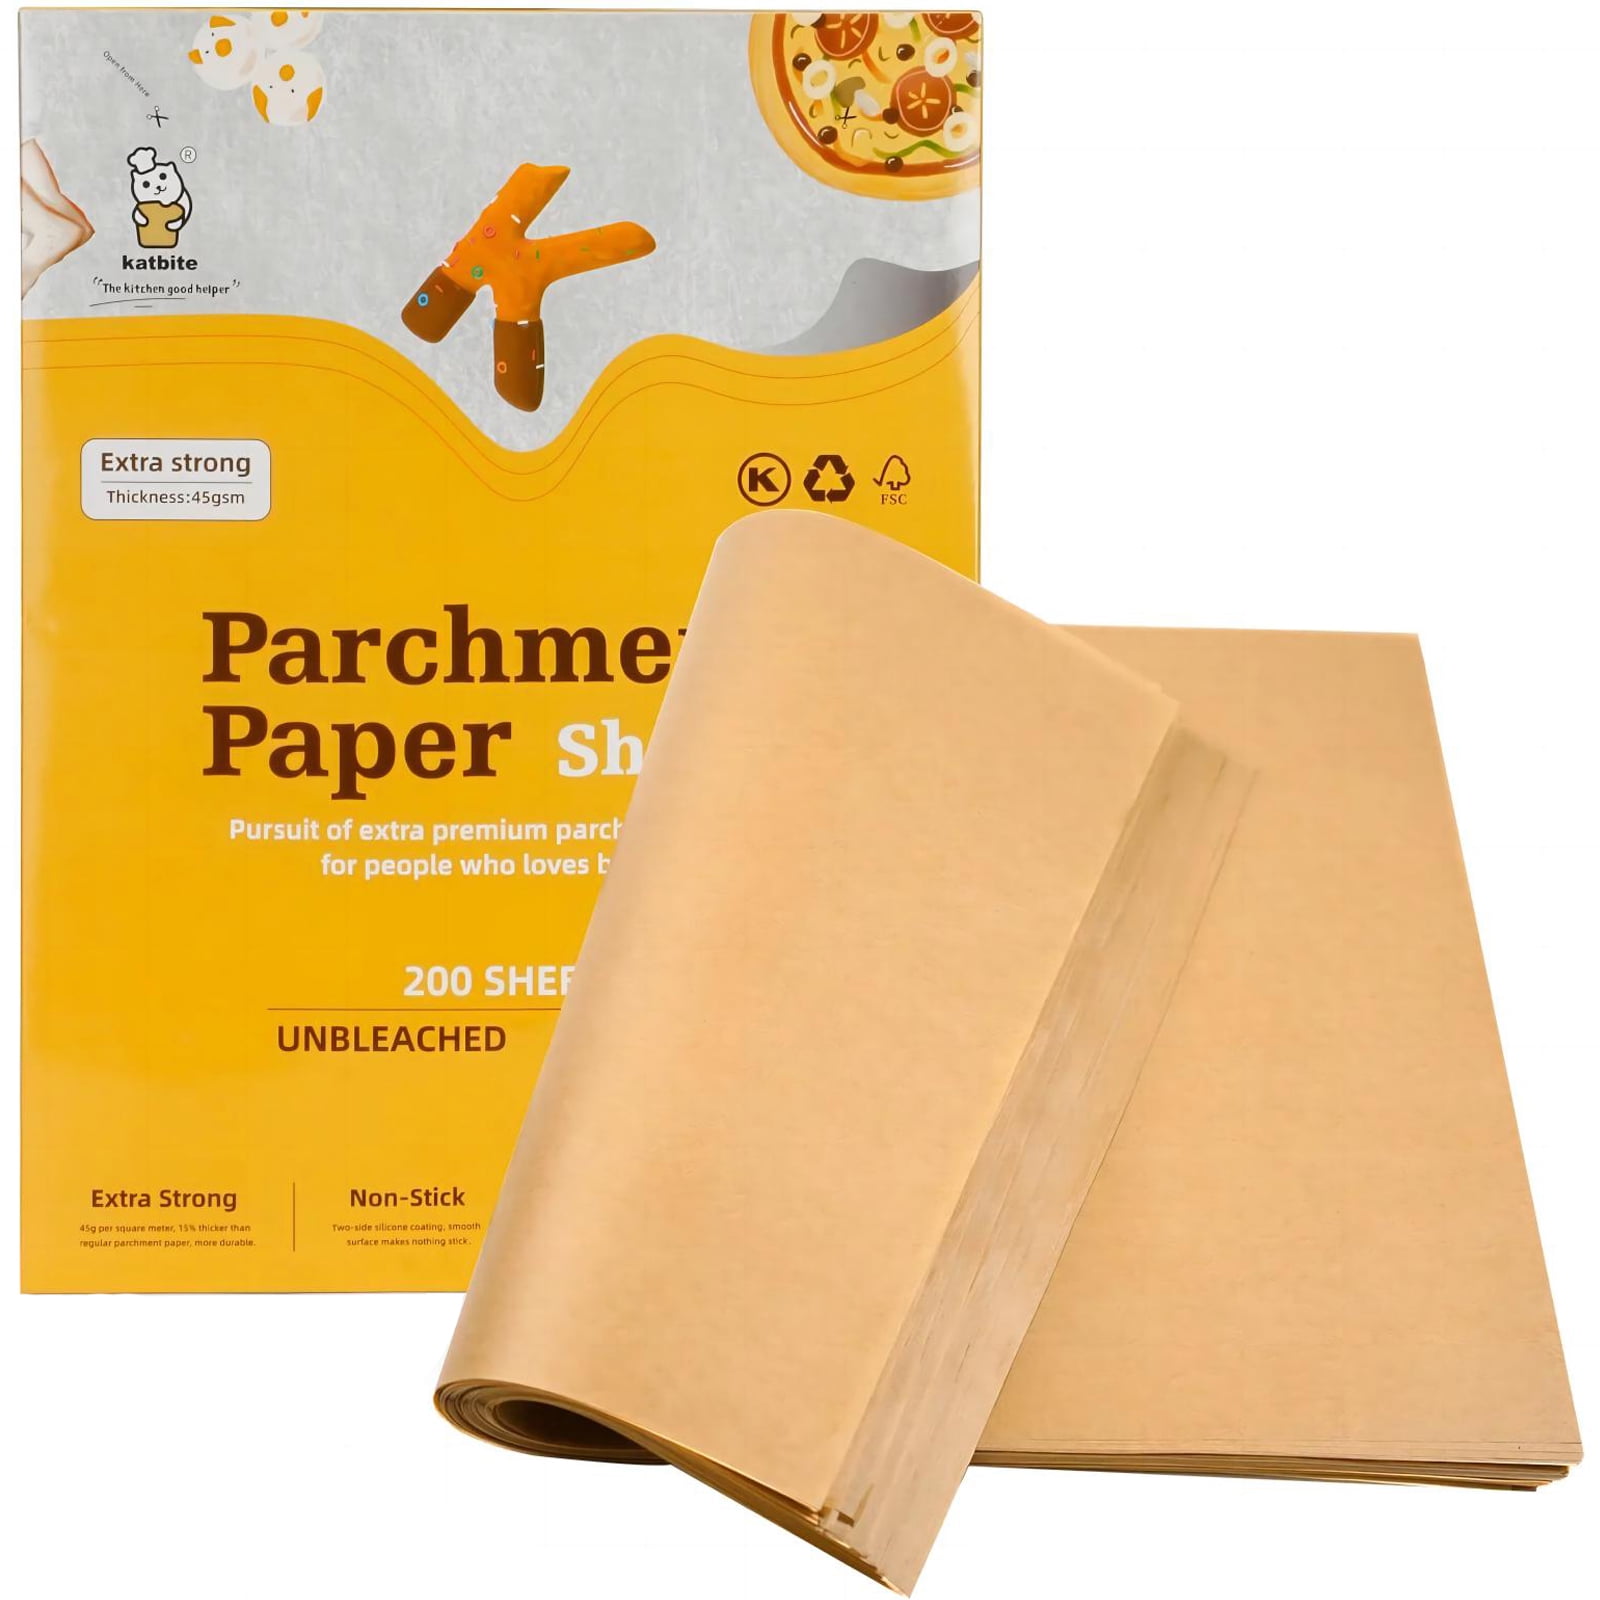 Katbite Heavy Duty Unbleached Parchment Paper Sheets-120